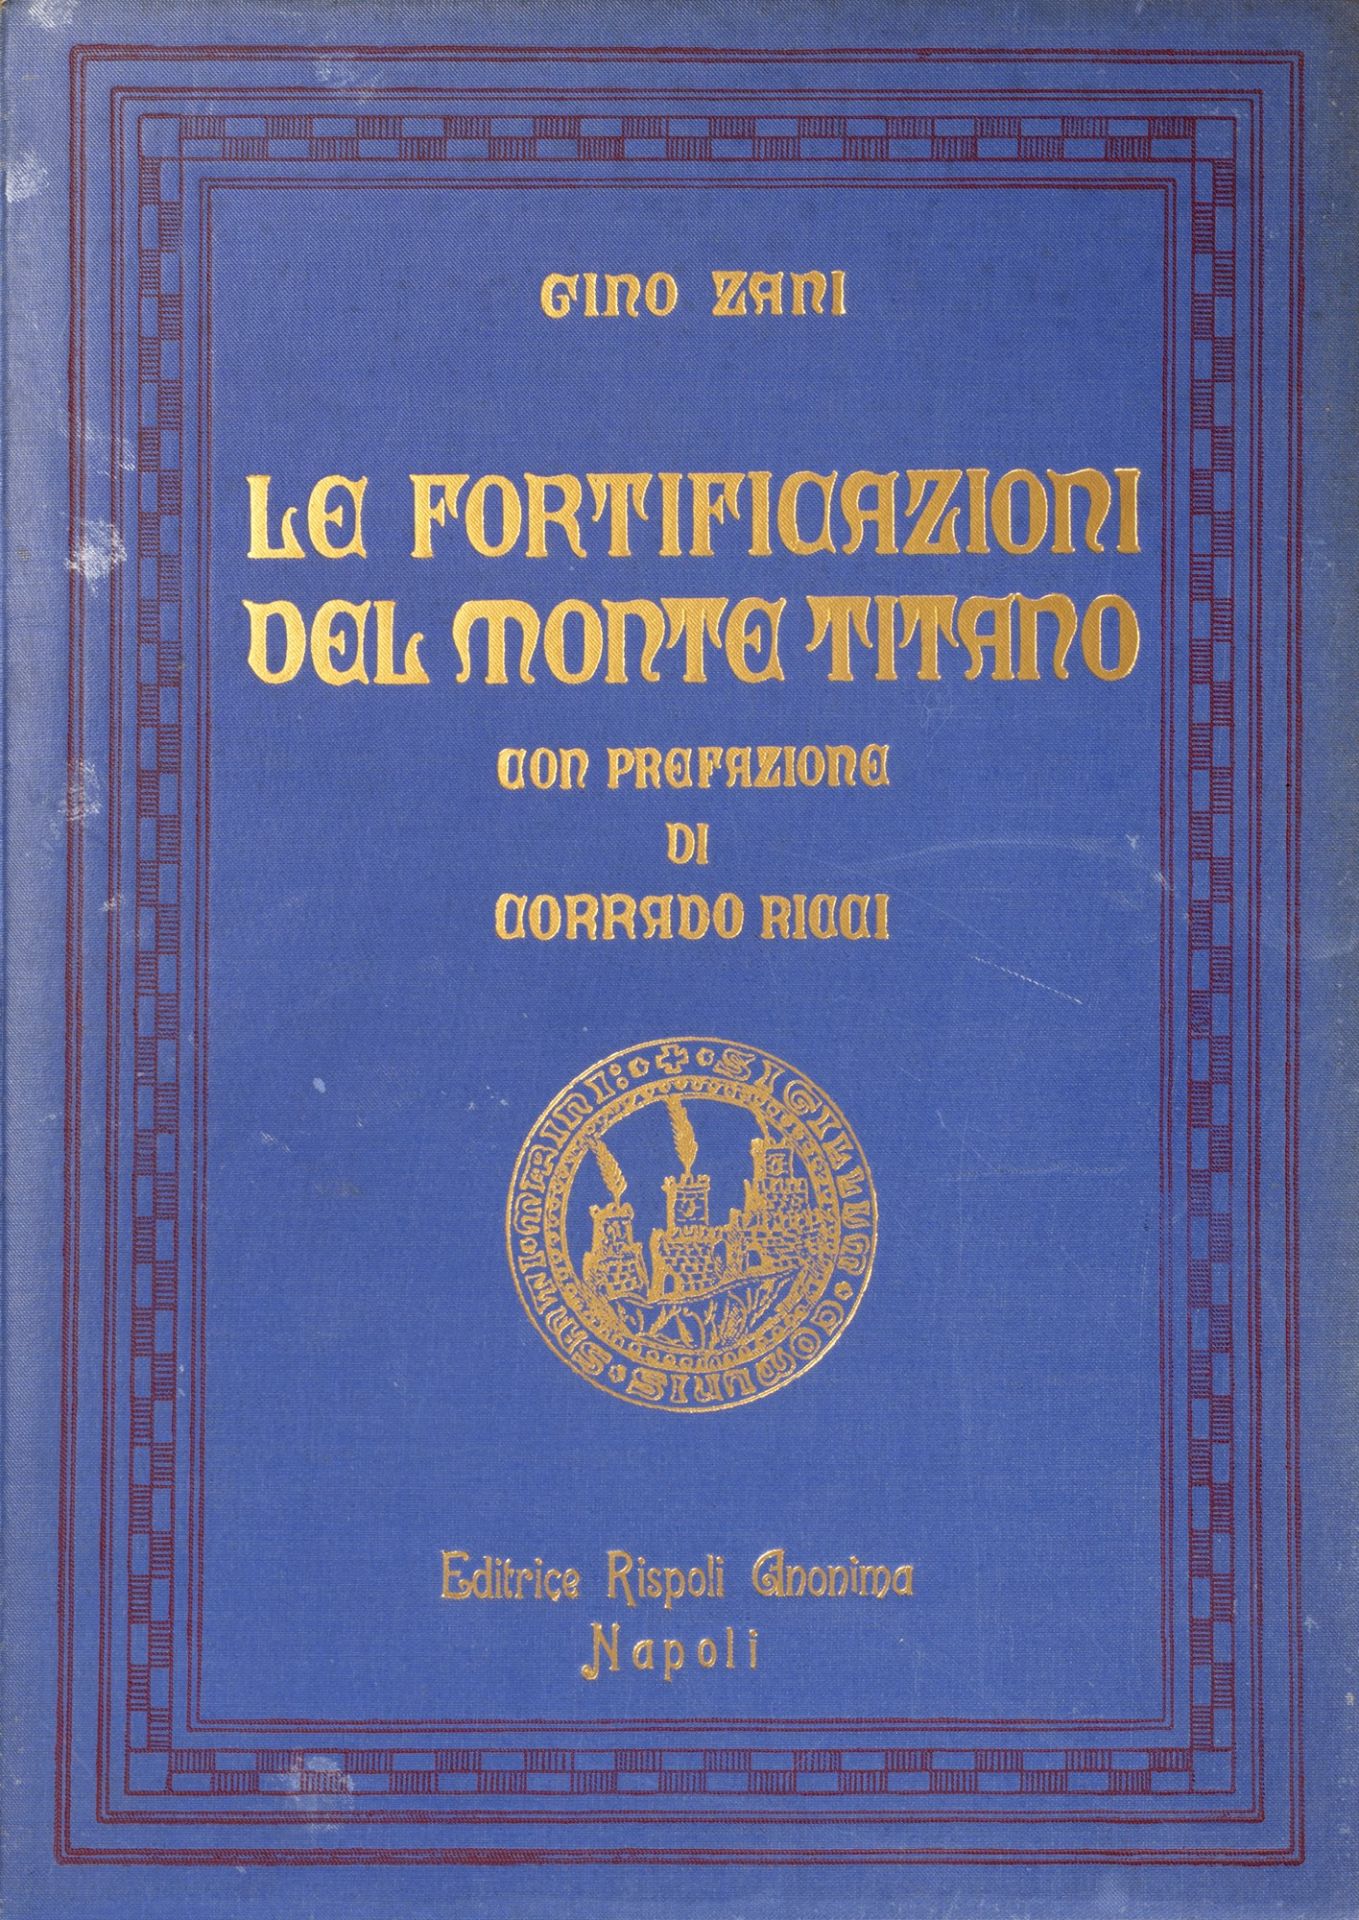 Repubblica di San Marino - Zani, Gino - The fortifications of Monte Titano. With a preface by Corrad